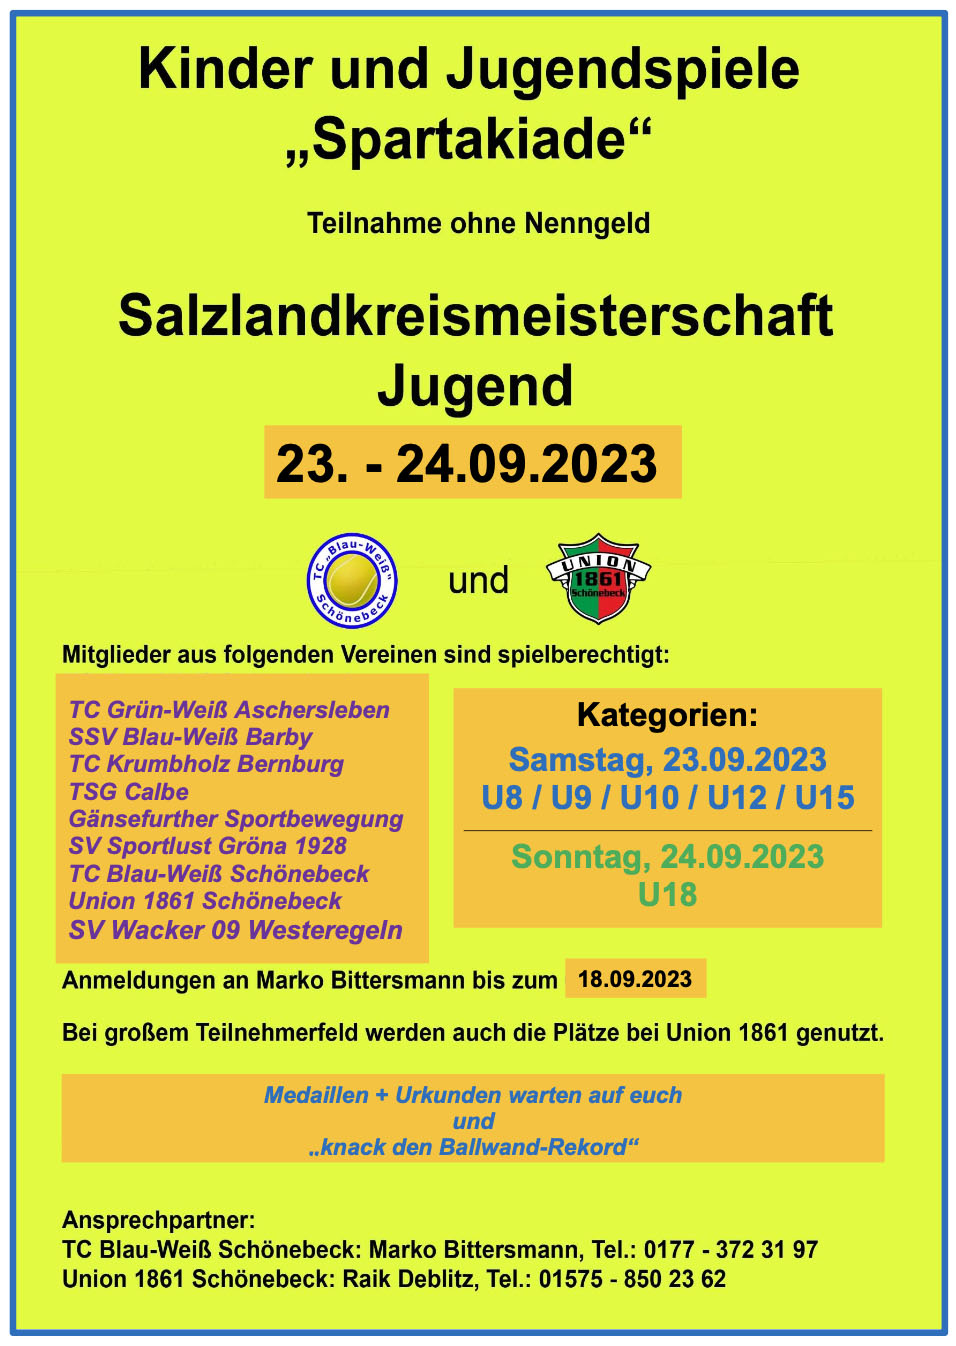 Salzlandkreismeisterschaft Jugend 2023 (23. - 24. September)